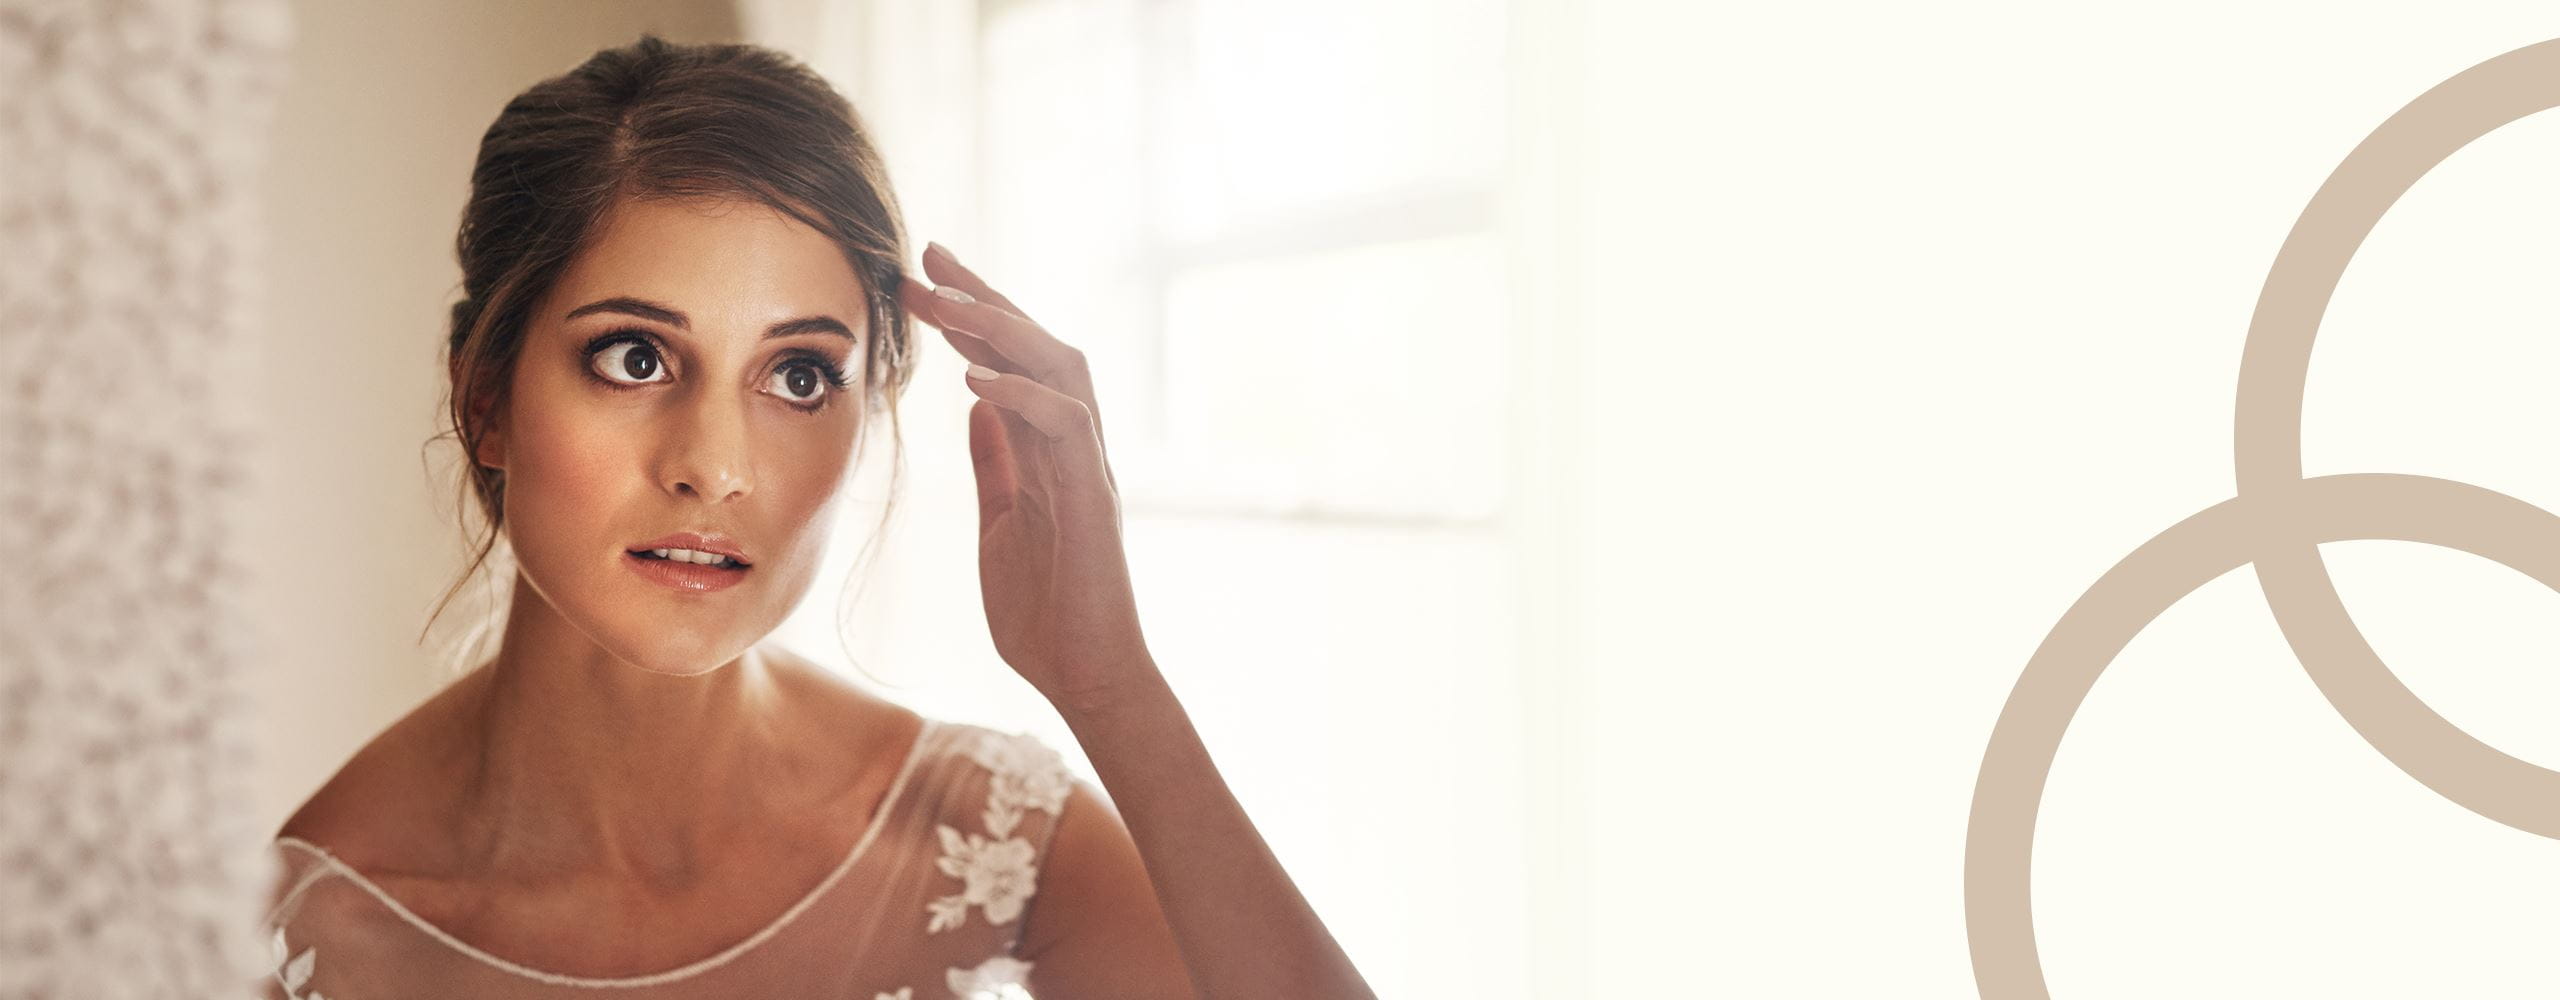 Pielęgnacja twarzy i włosów przed ślubem – o czym musisz pamiętać? 